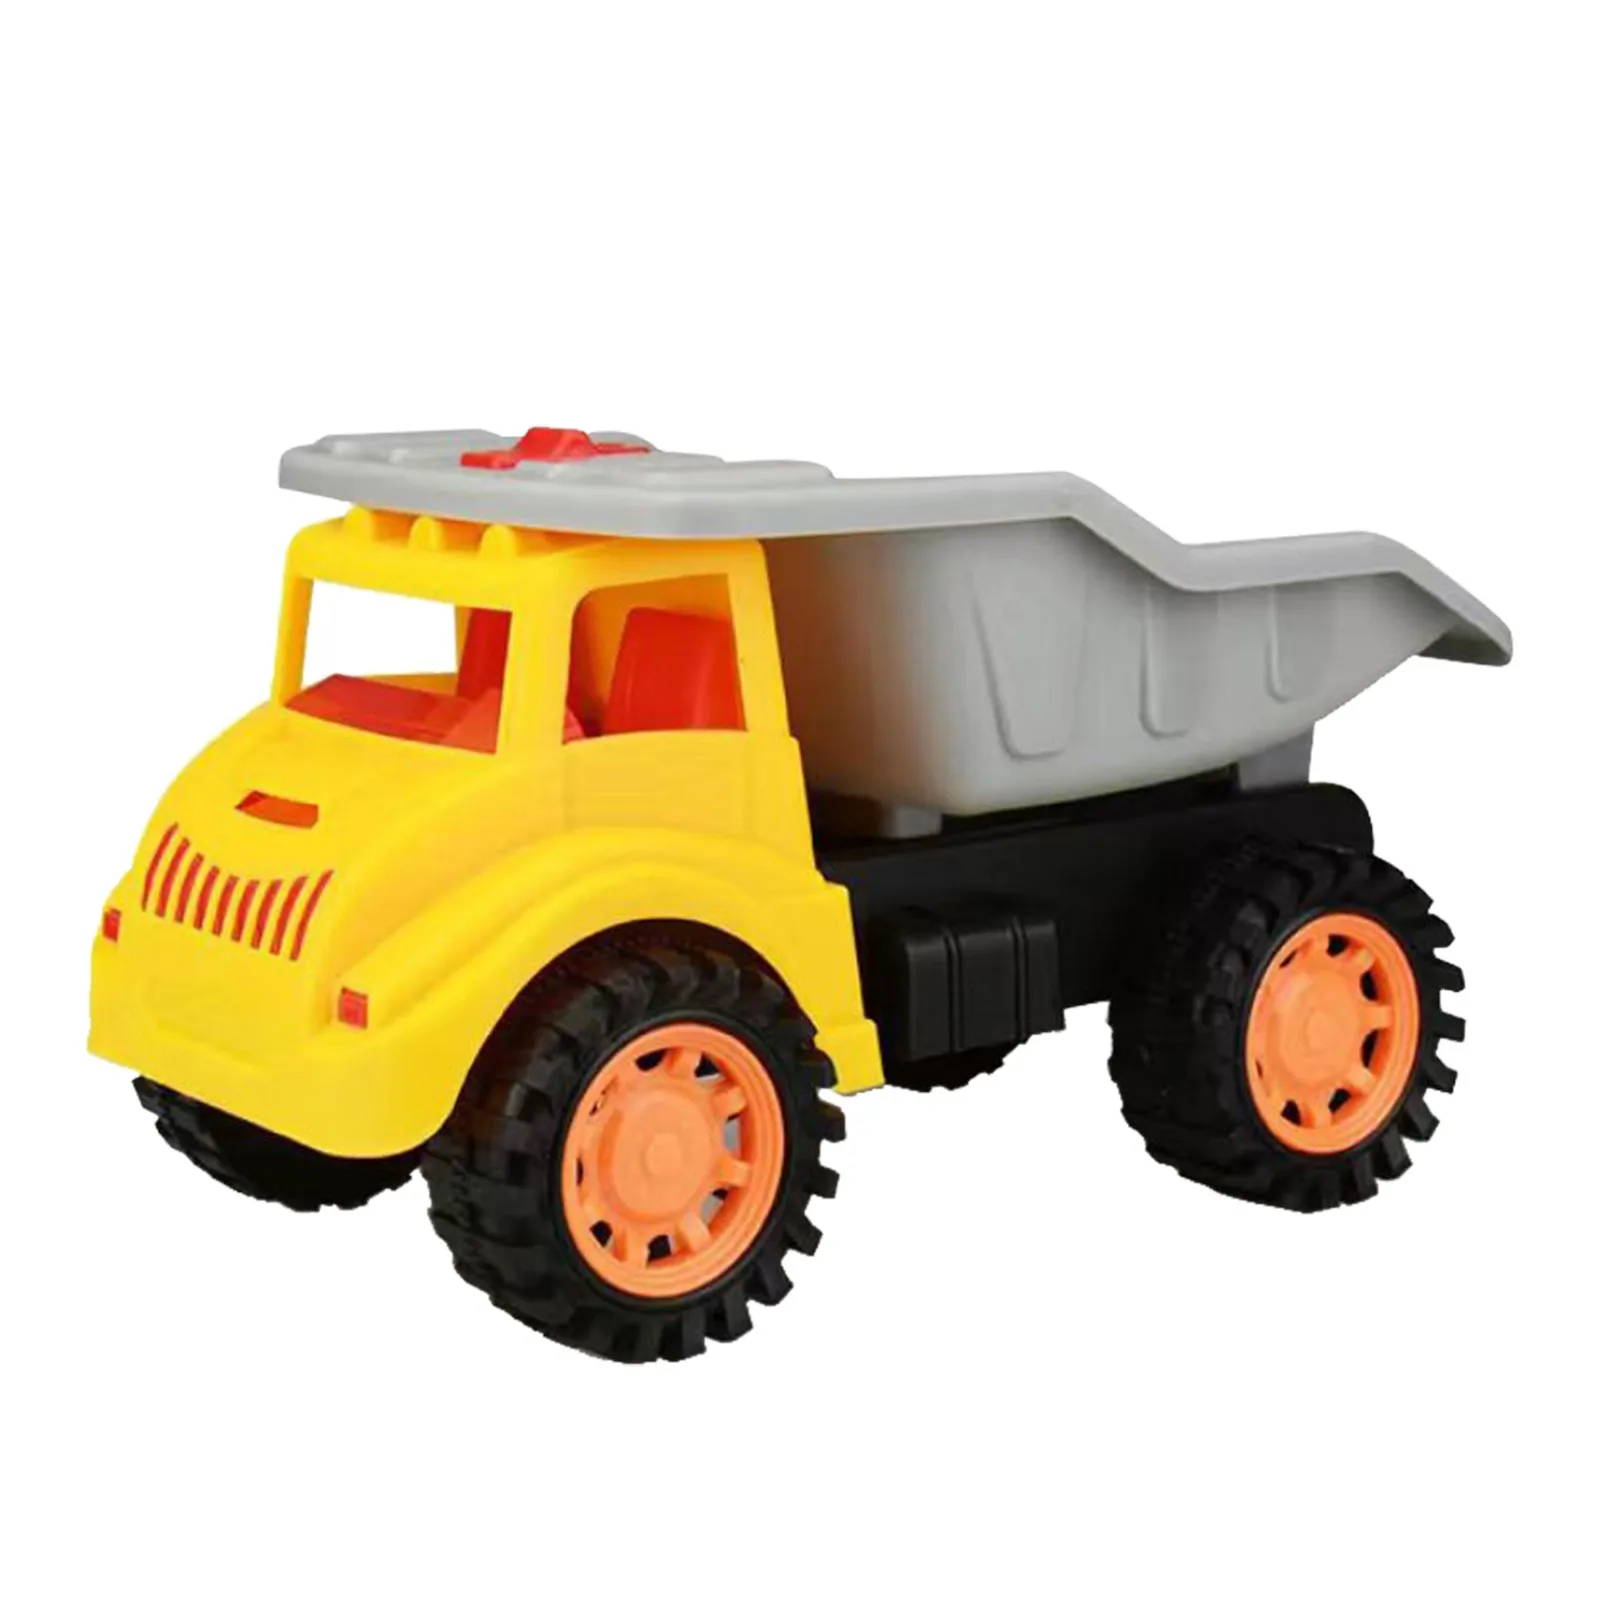 

Пляжные игрушечные автомобили, инженерные модели автомобилей-инерционная игра назад в автомобили для детского бассейна, надувные игрушки, пляжные игрушки